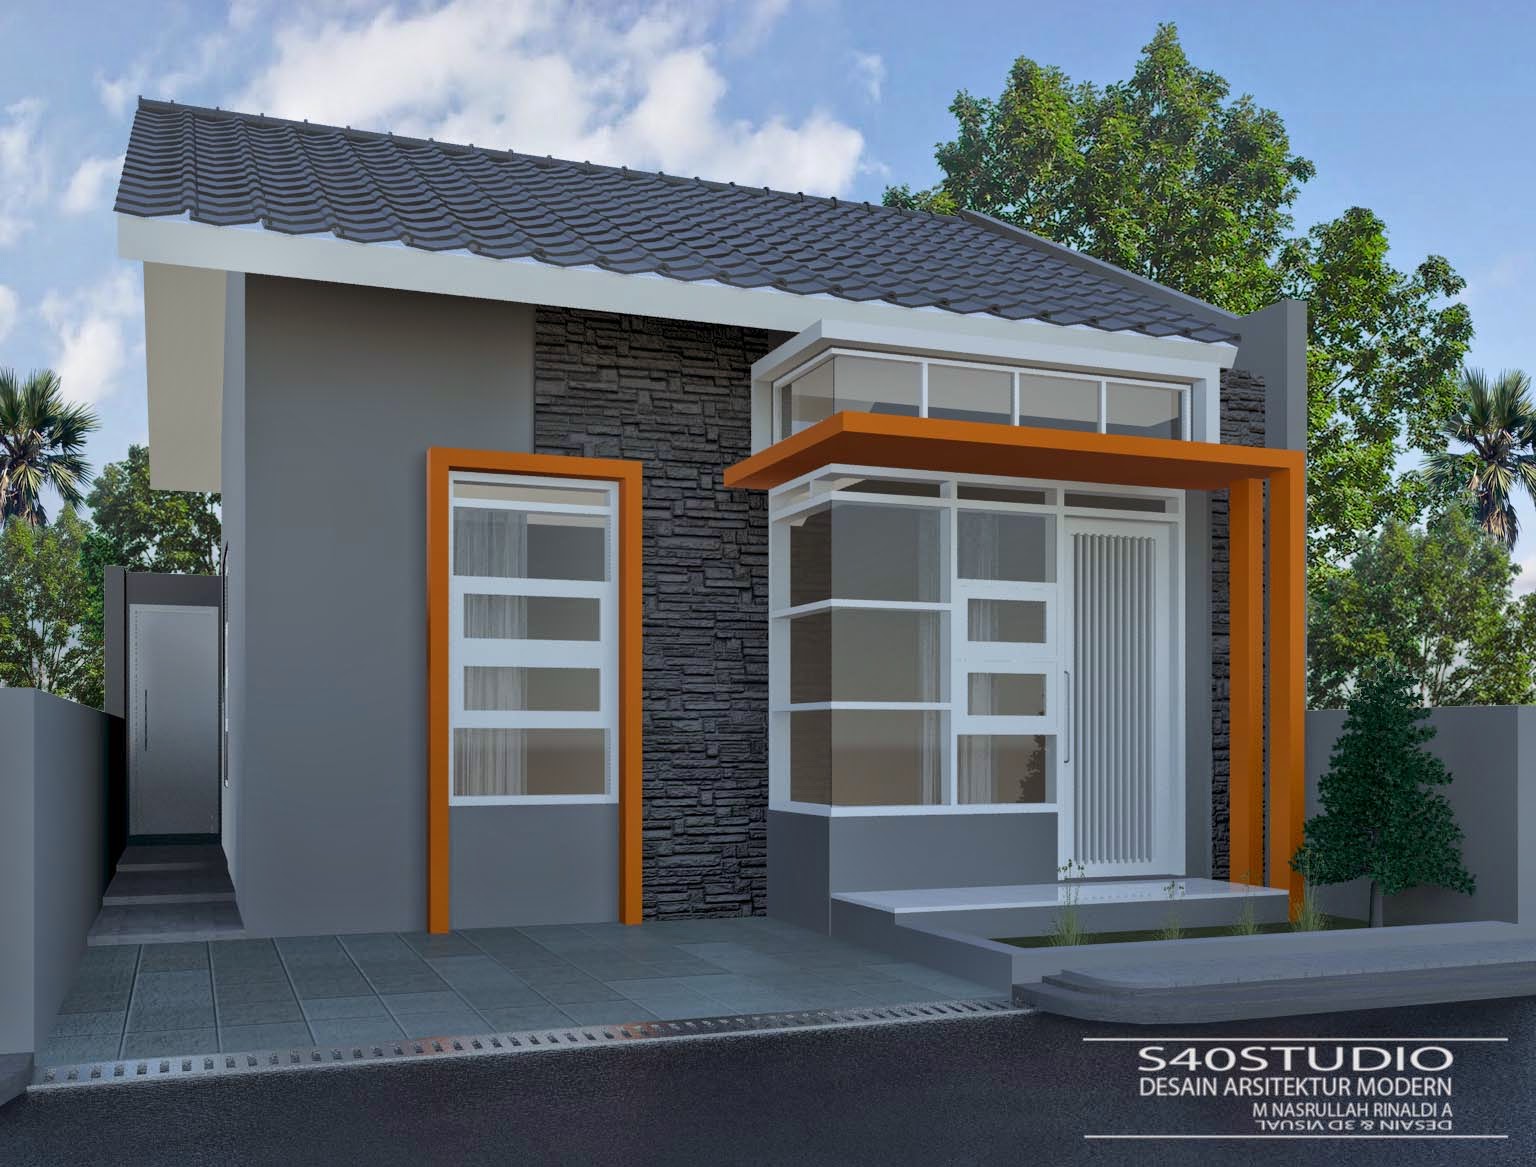 Desain Rumah 7 X 12 Meter DESAIN RUMAH MINIMALIS MODERN S40studio